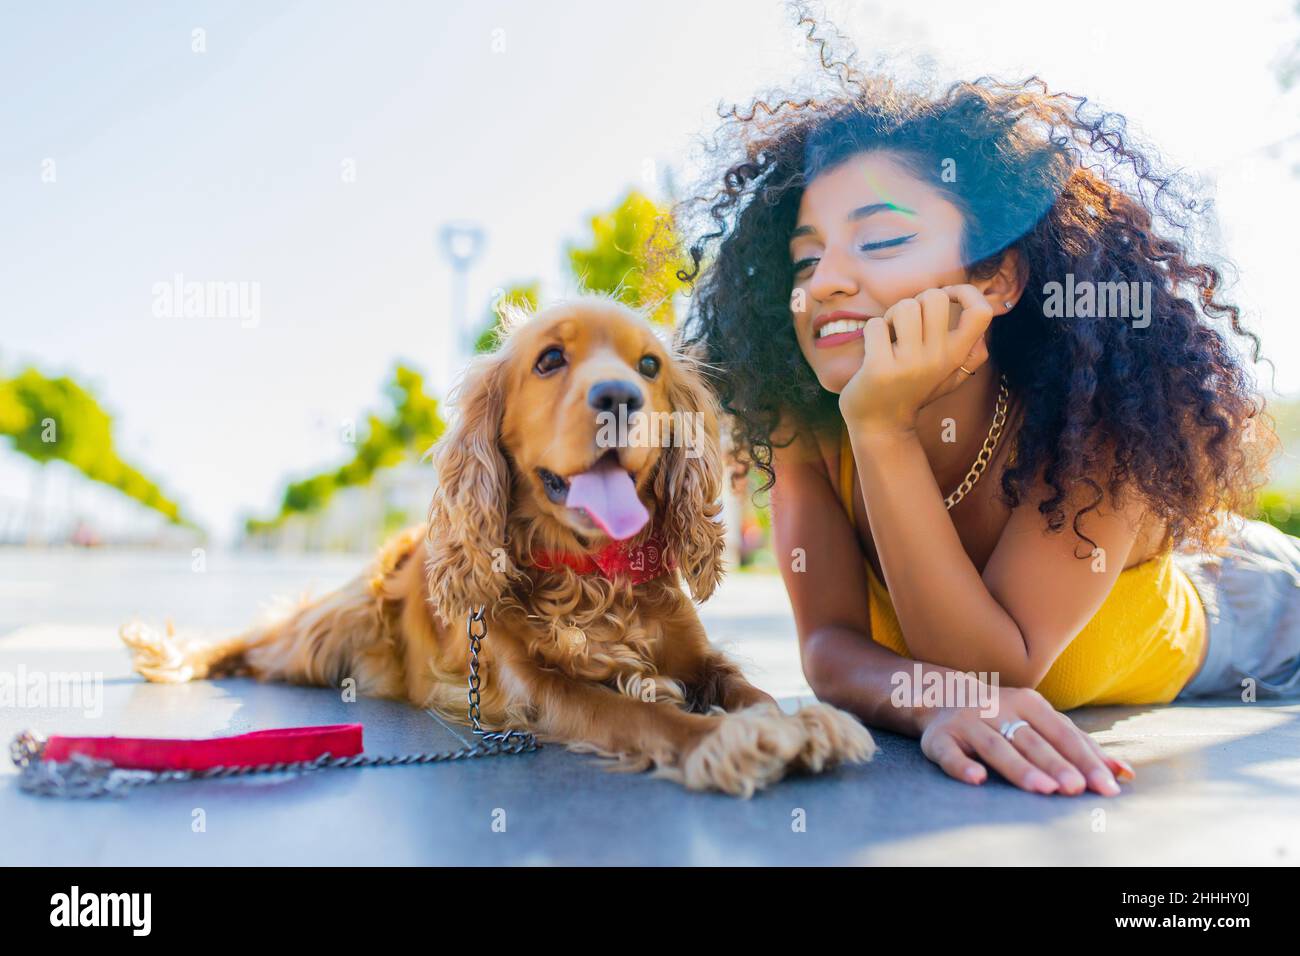 Fröhliche, dunkle, langhaarige Frau mit amerikanischem Cockerhund, die im Sommerpark spielt Stockfoto